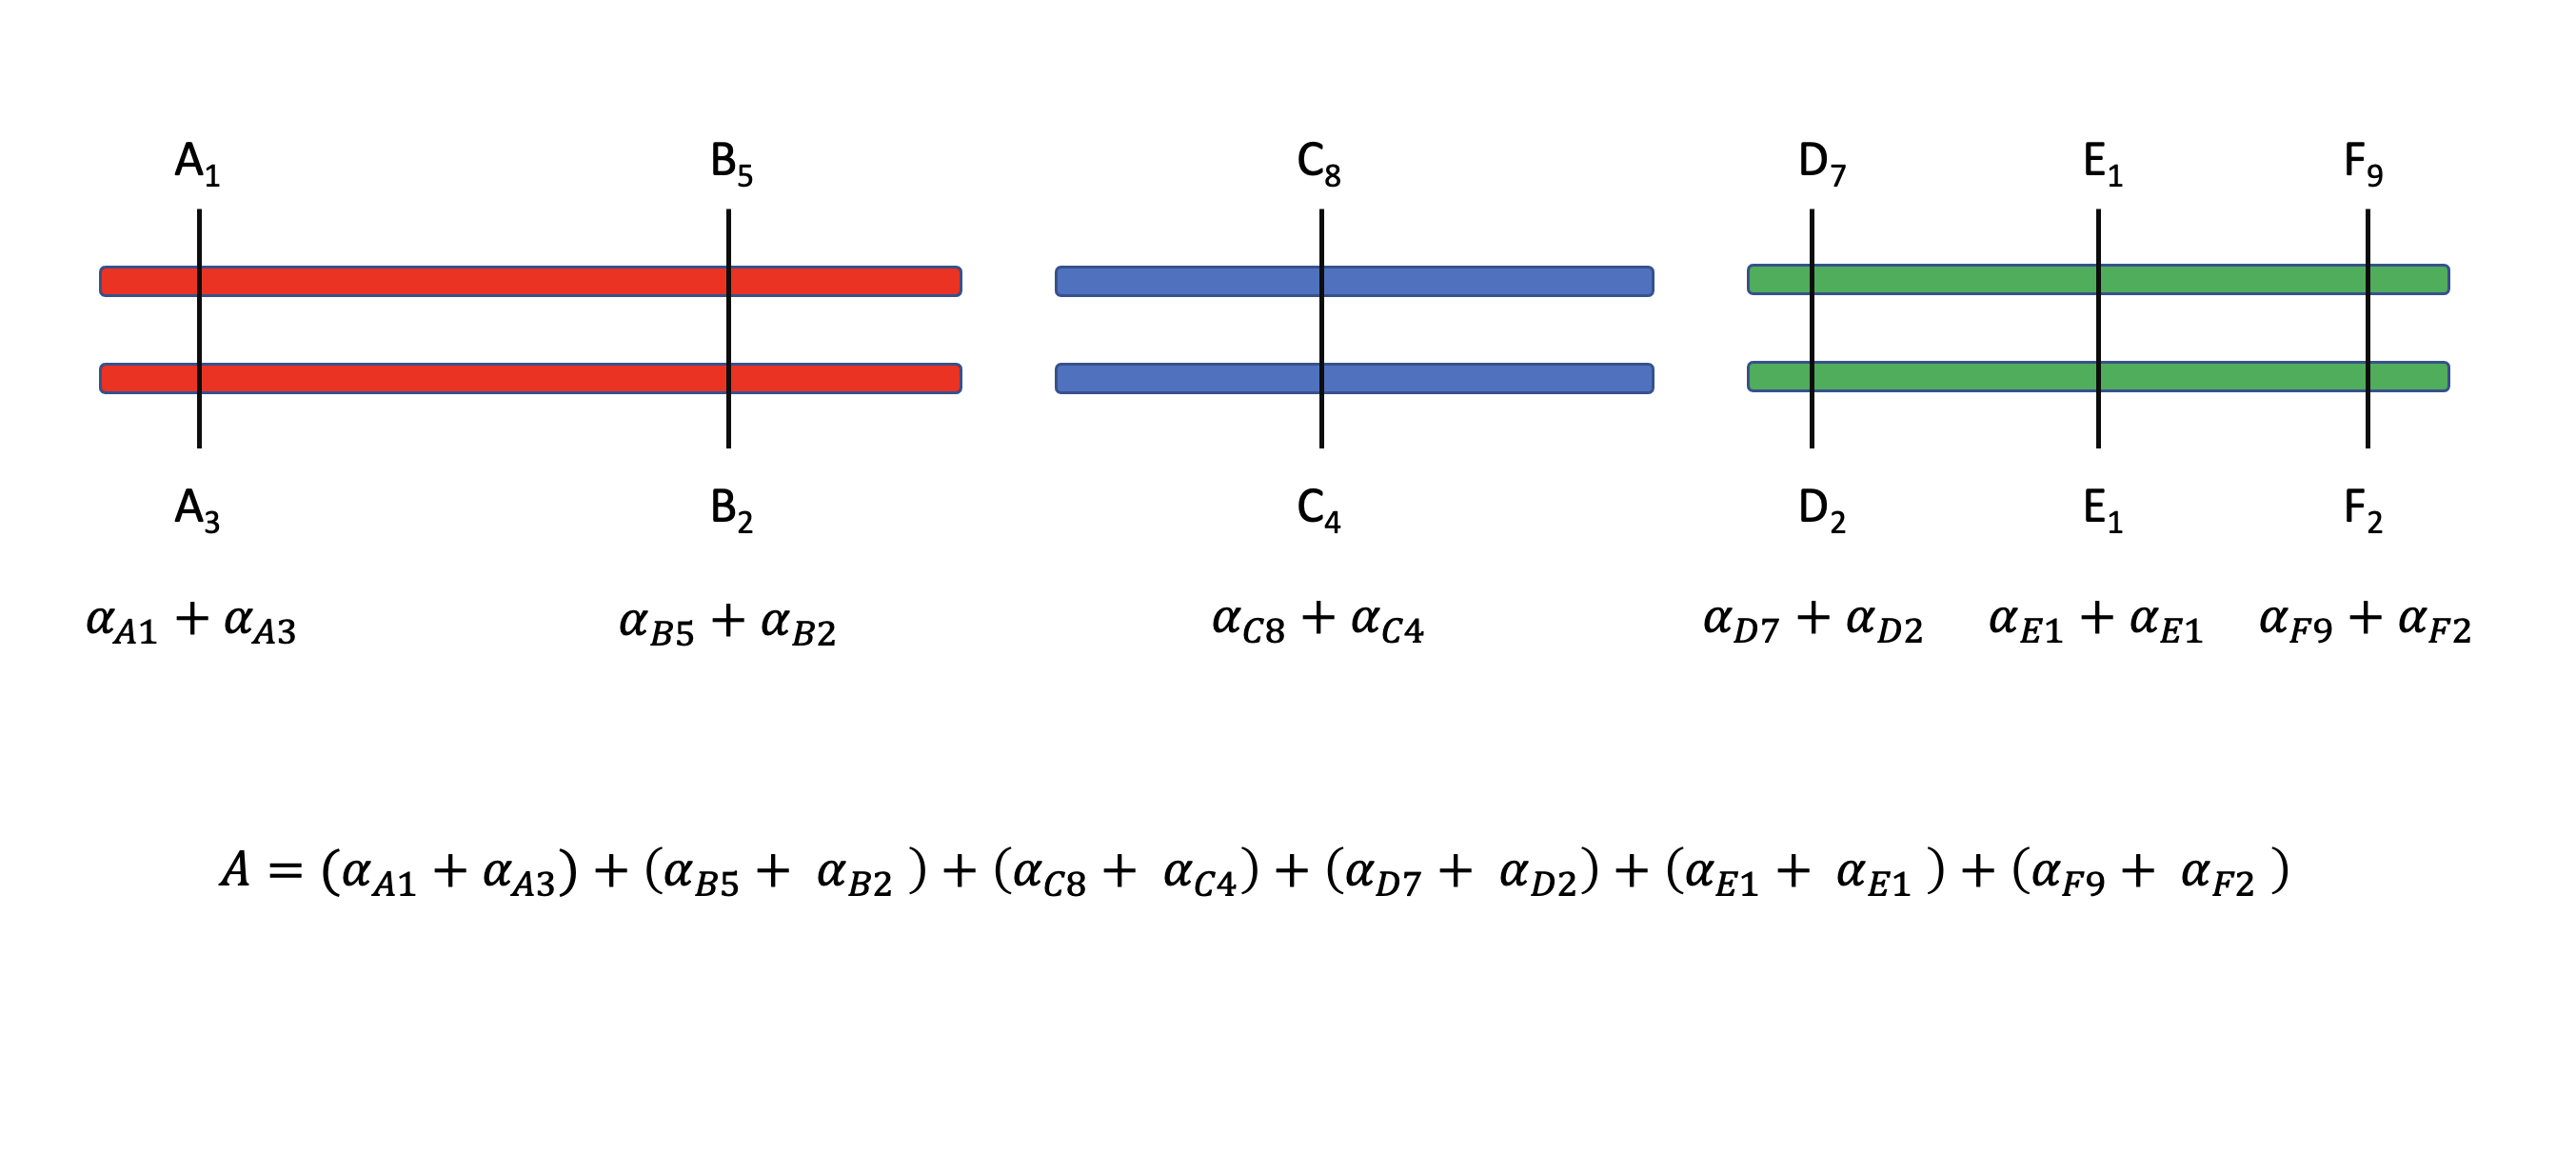 Valor de cría (o reproductivo) de un individuo diploide. Tres cromosomas, marcados por colores diferentes, presentan un total de 6 loci (nombrados A-E) que contribuyen al valor genotípico y fenotípico de una característica. El valor de cría está completamente determinado por la suma de los aportes individuales de todos los alelos presentes en los 6 loci. Cada loci tiene un número distinto de alelos, pero para cada uno de ellos siempre habrá dos alelos en particular, identificados por los números en el subíndice.